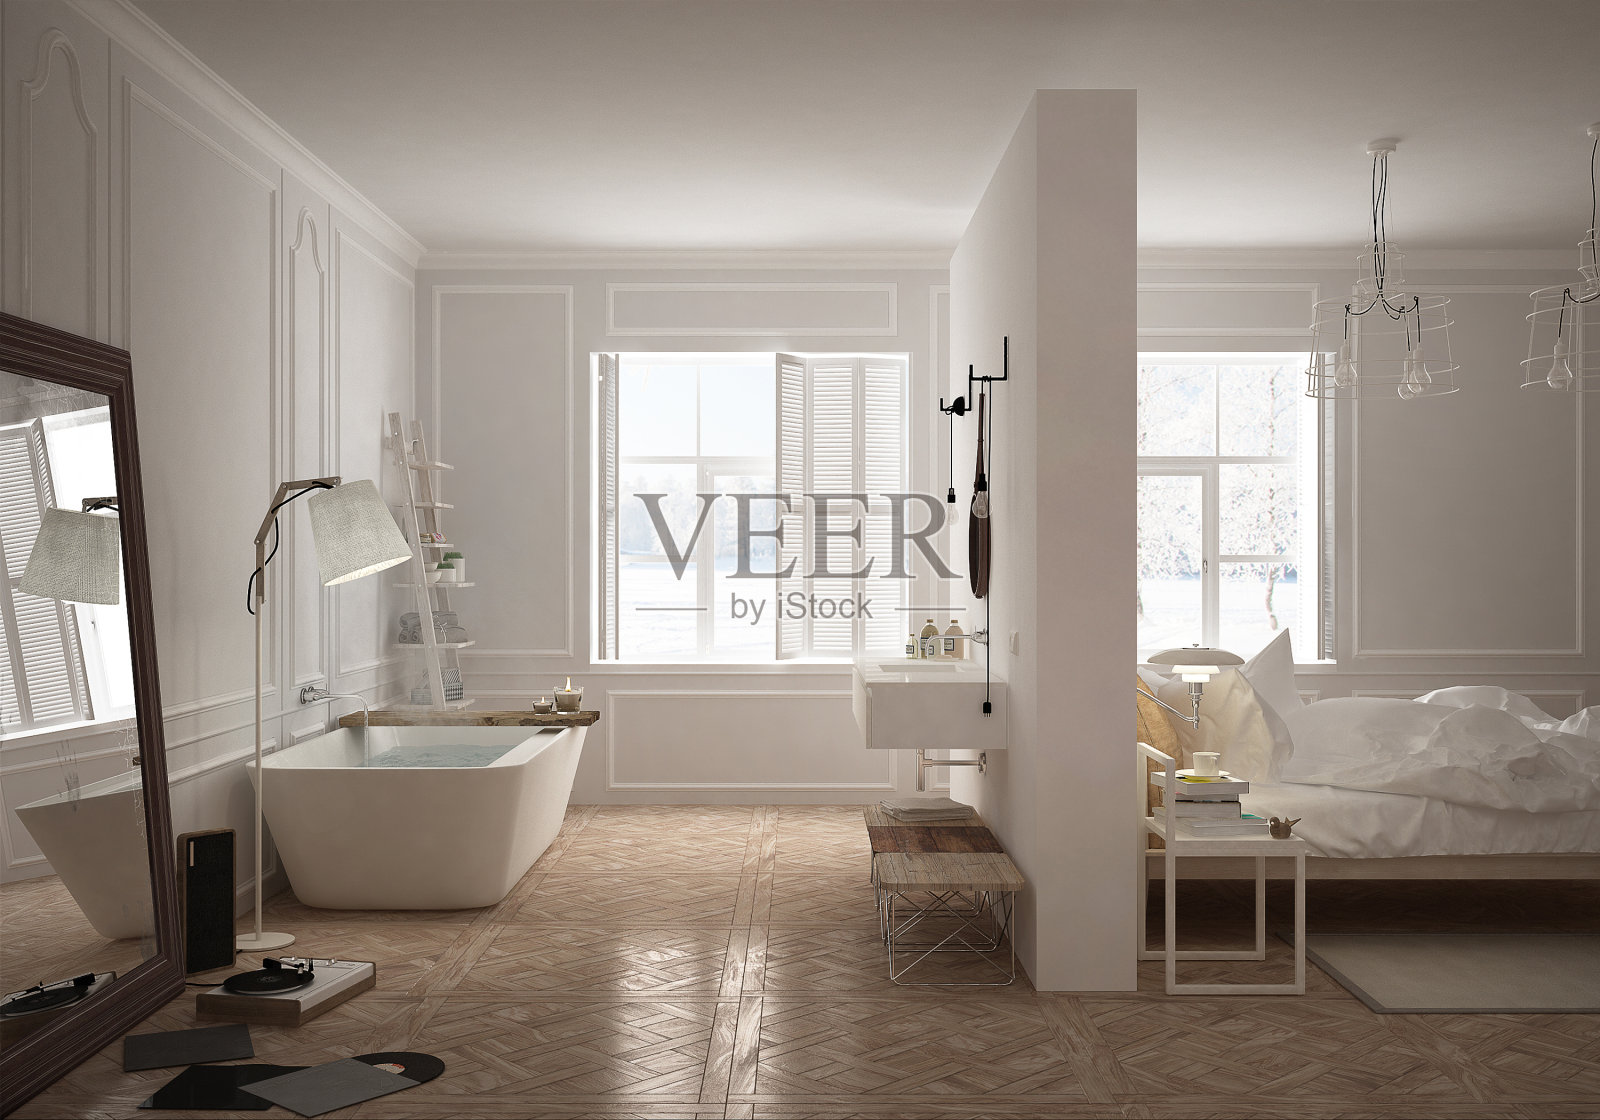 斯堪的纳维亚风格的卧室和浴室照片摄影图片